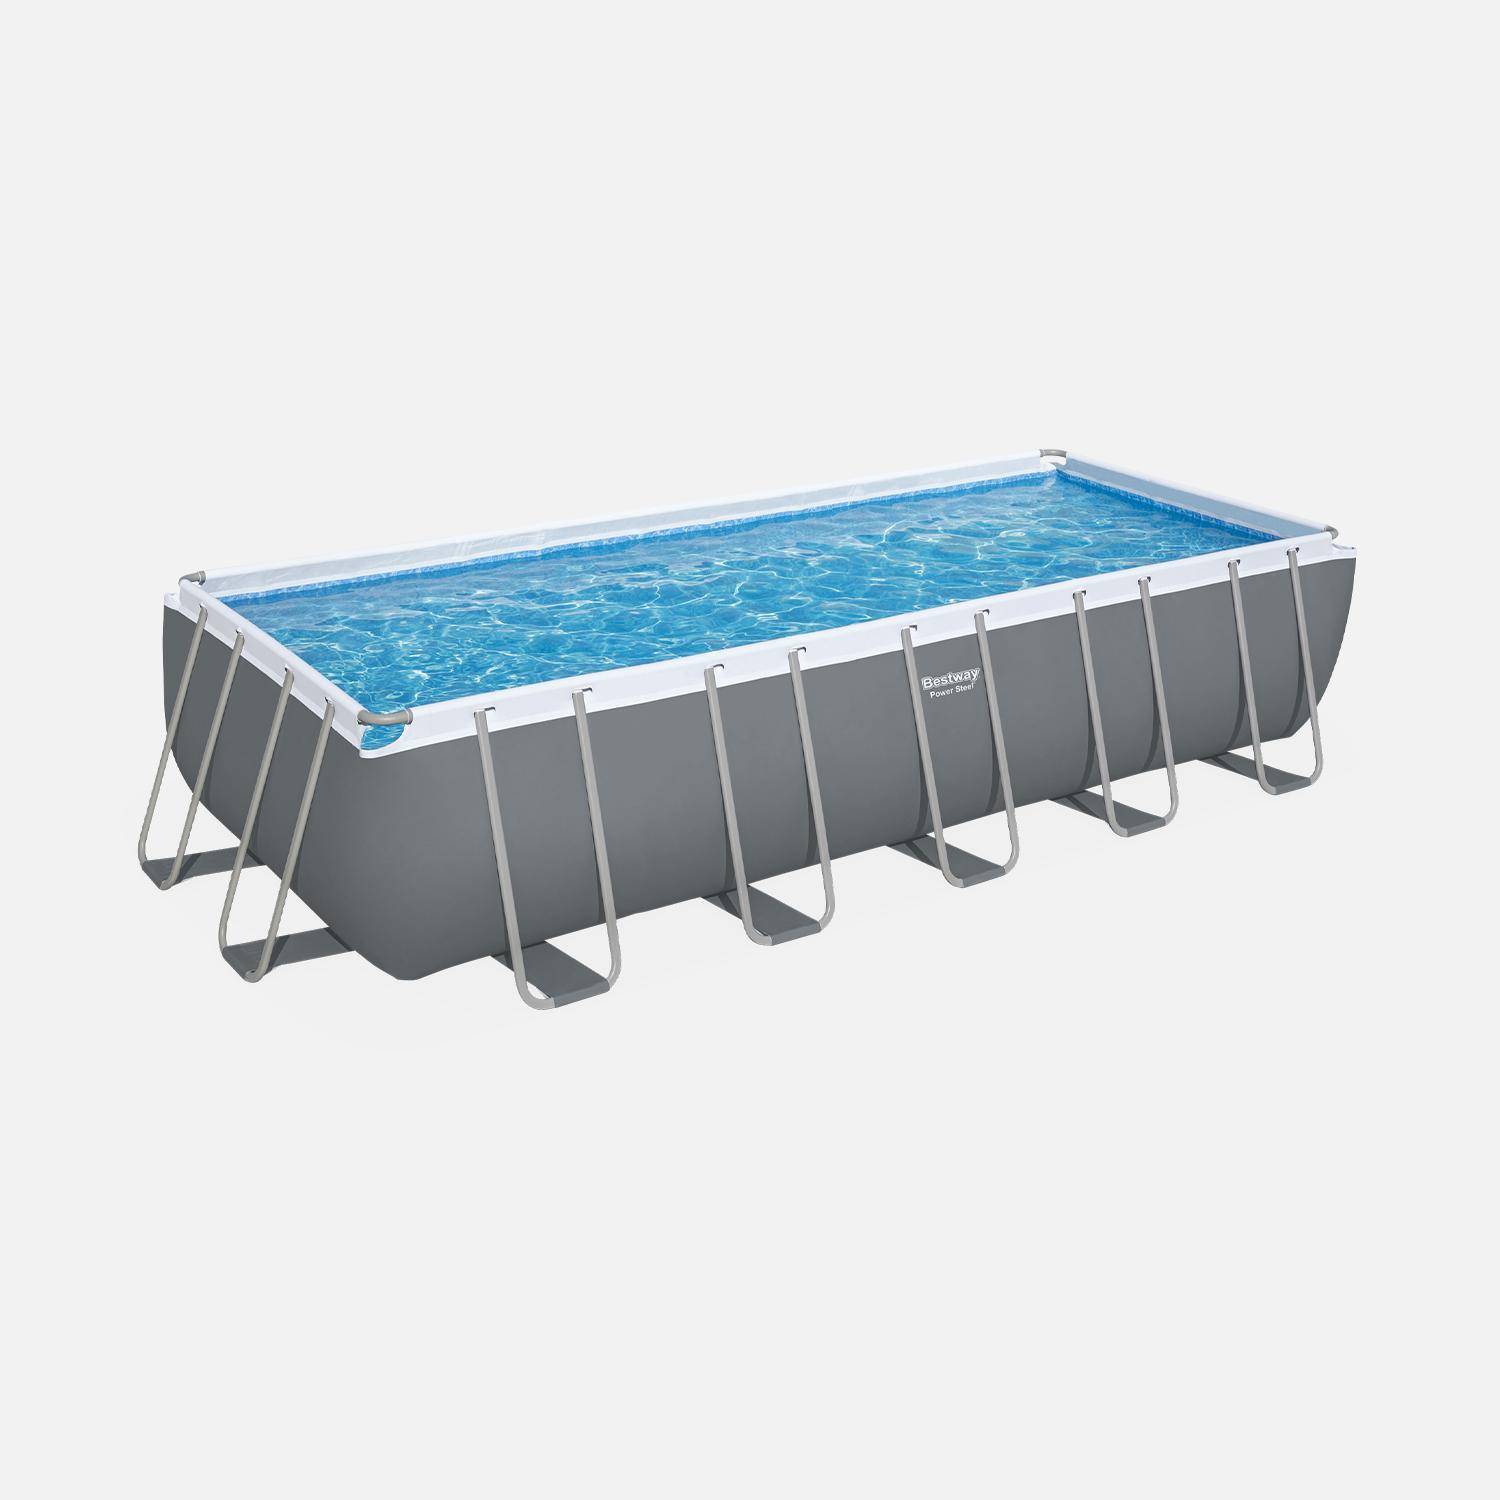 Bovengronds frame zwembad 6x3m, grijs, met dekzeil, pomp, filter, ladder, flotter en reparatieset Photo2